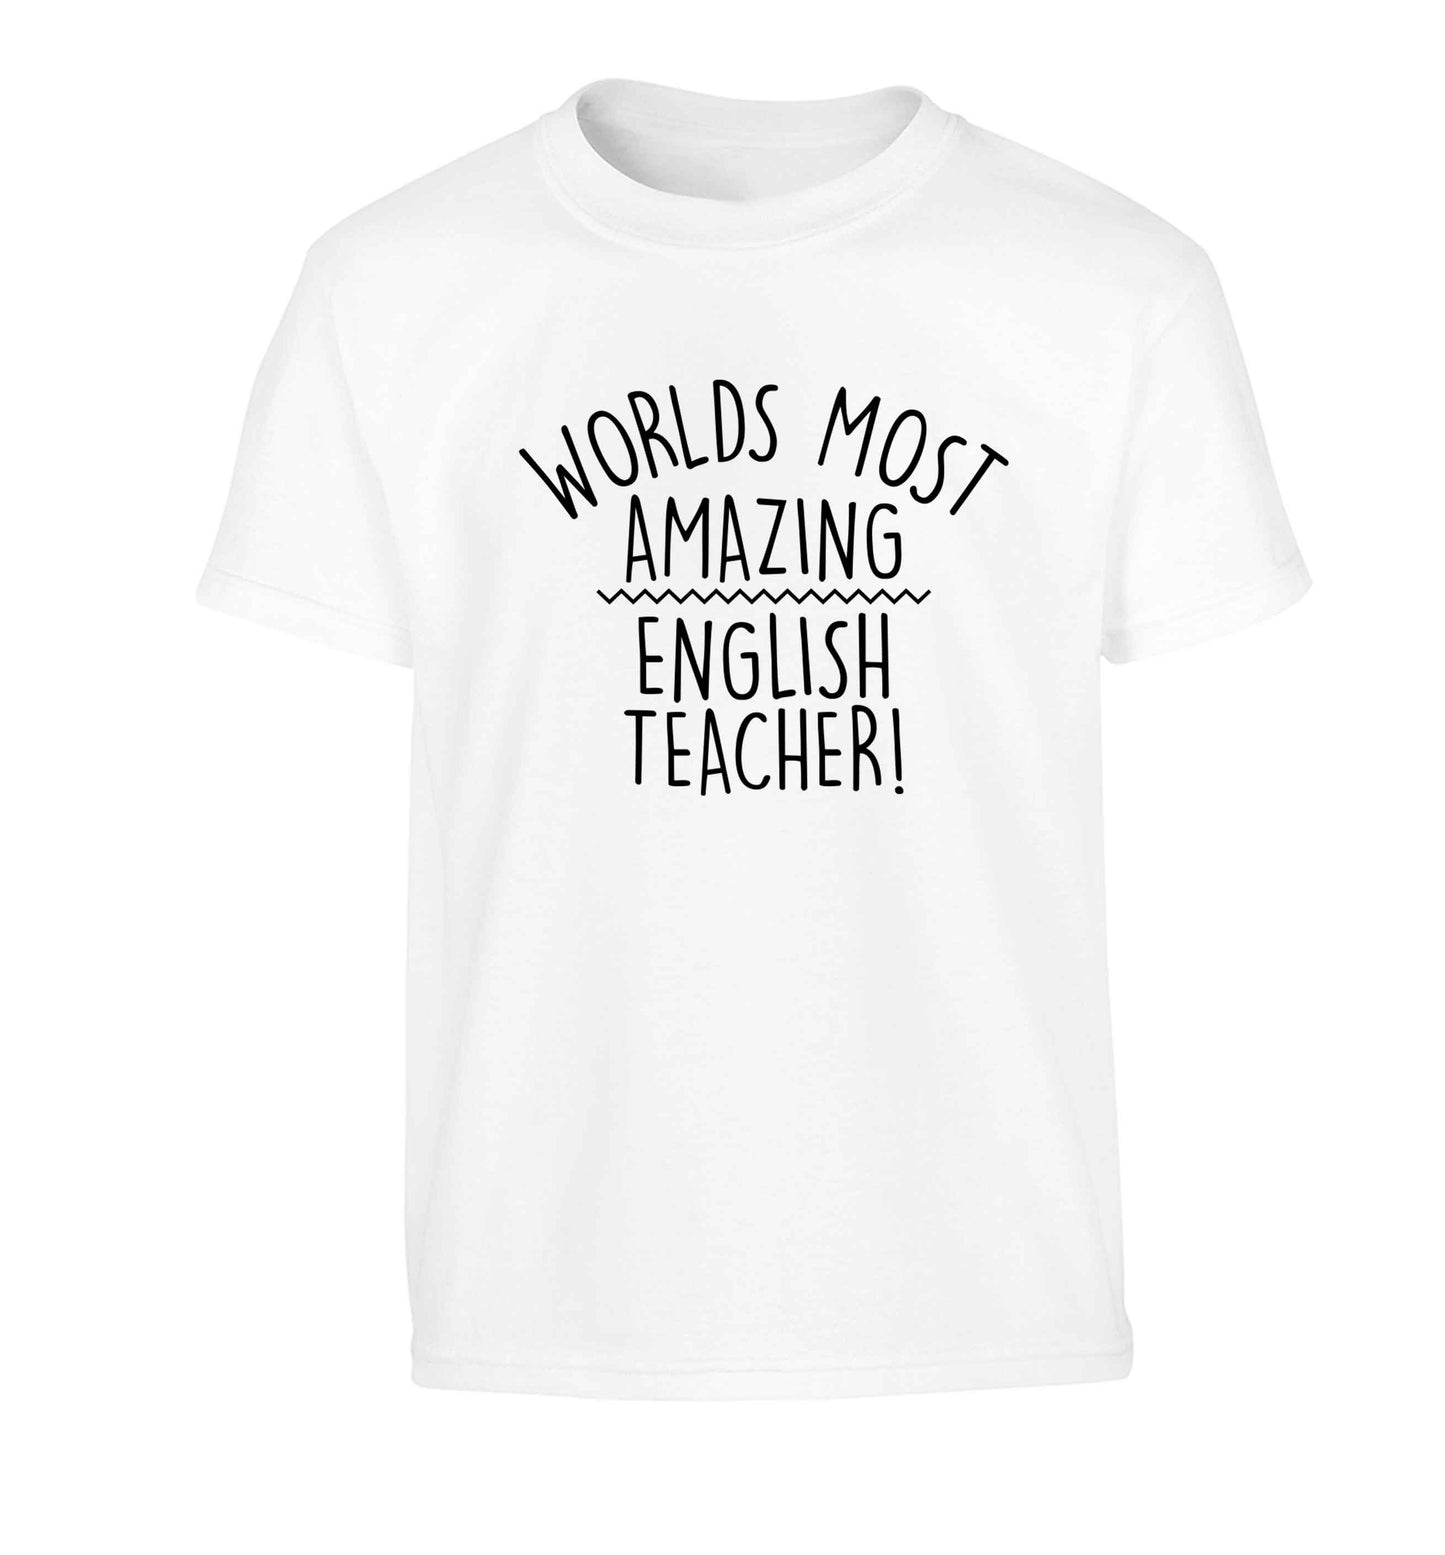 Worlds most amazing English teacher Children's white Tshirt 12-13 Years